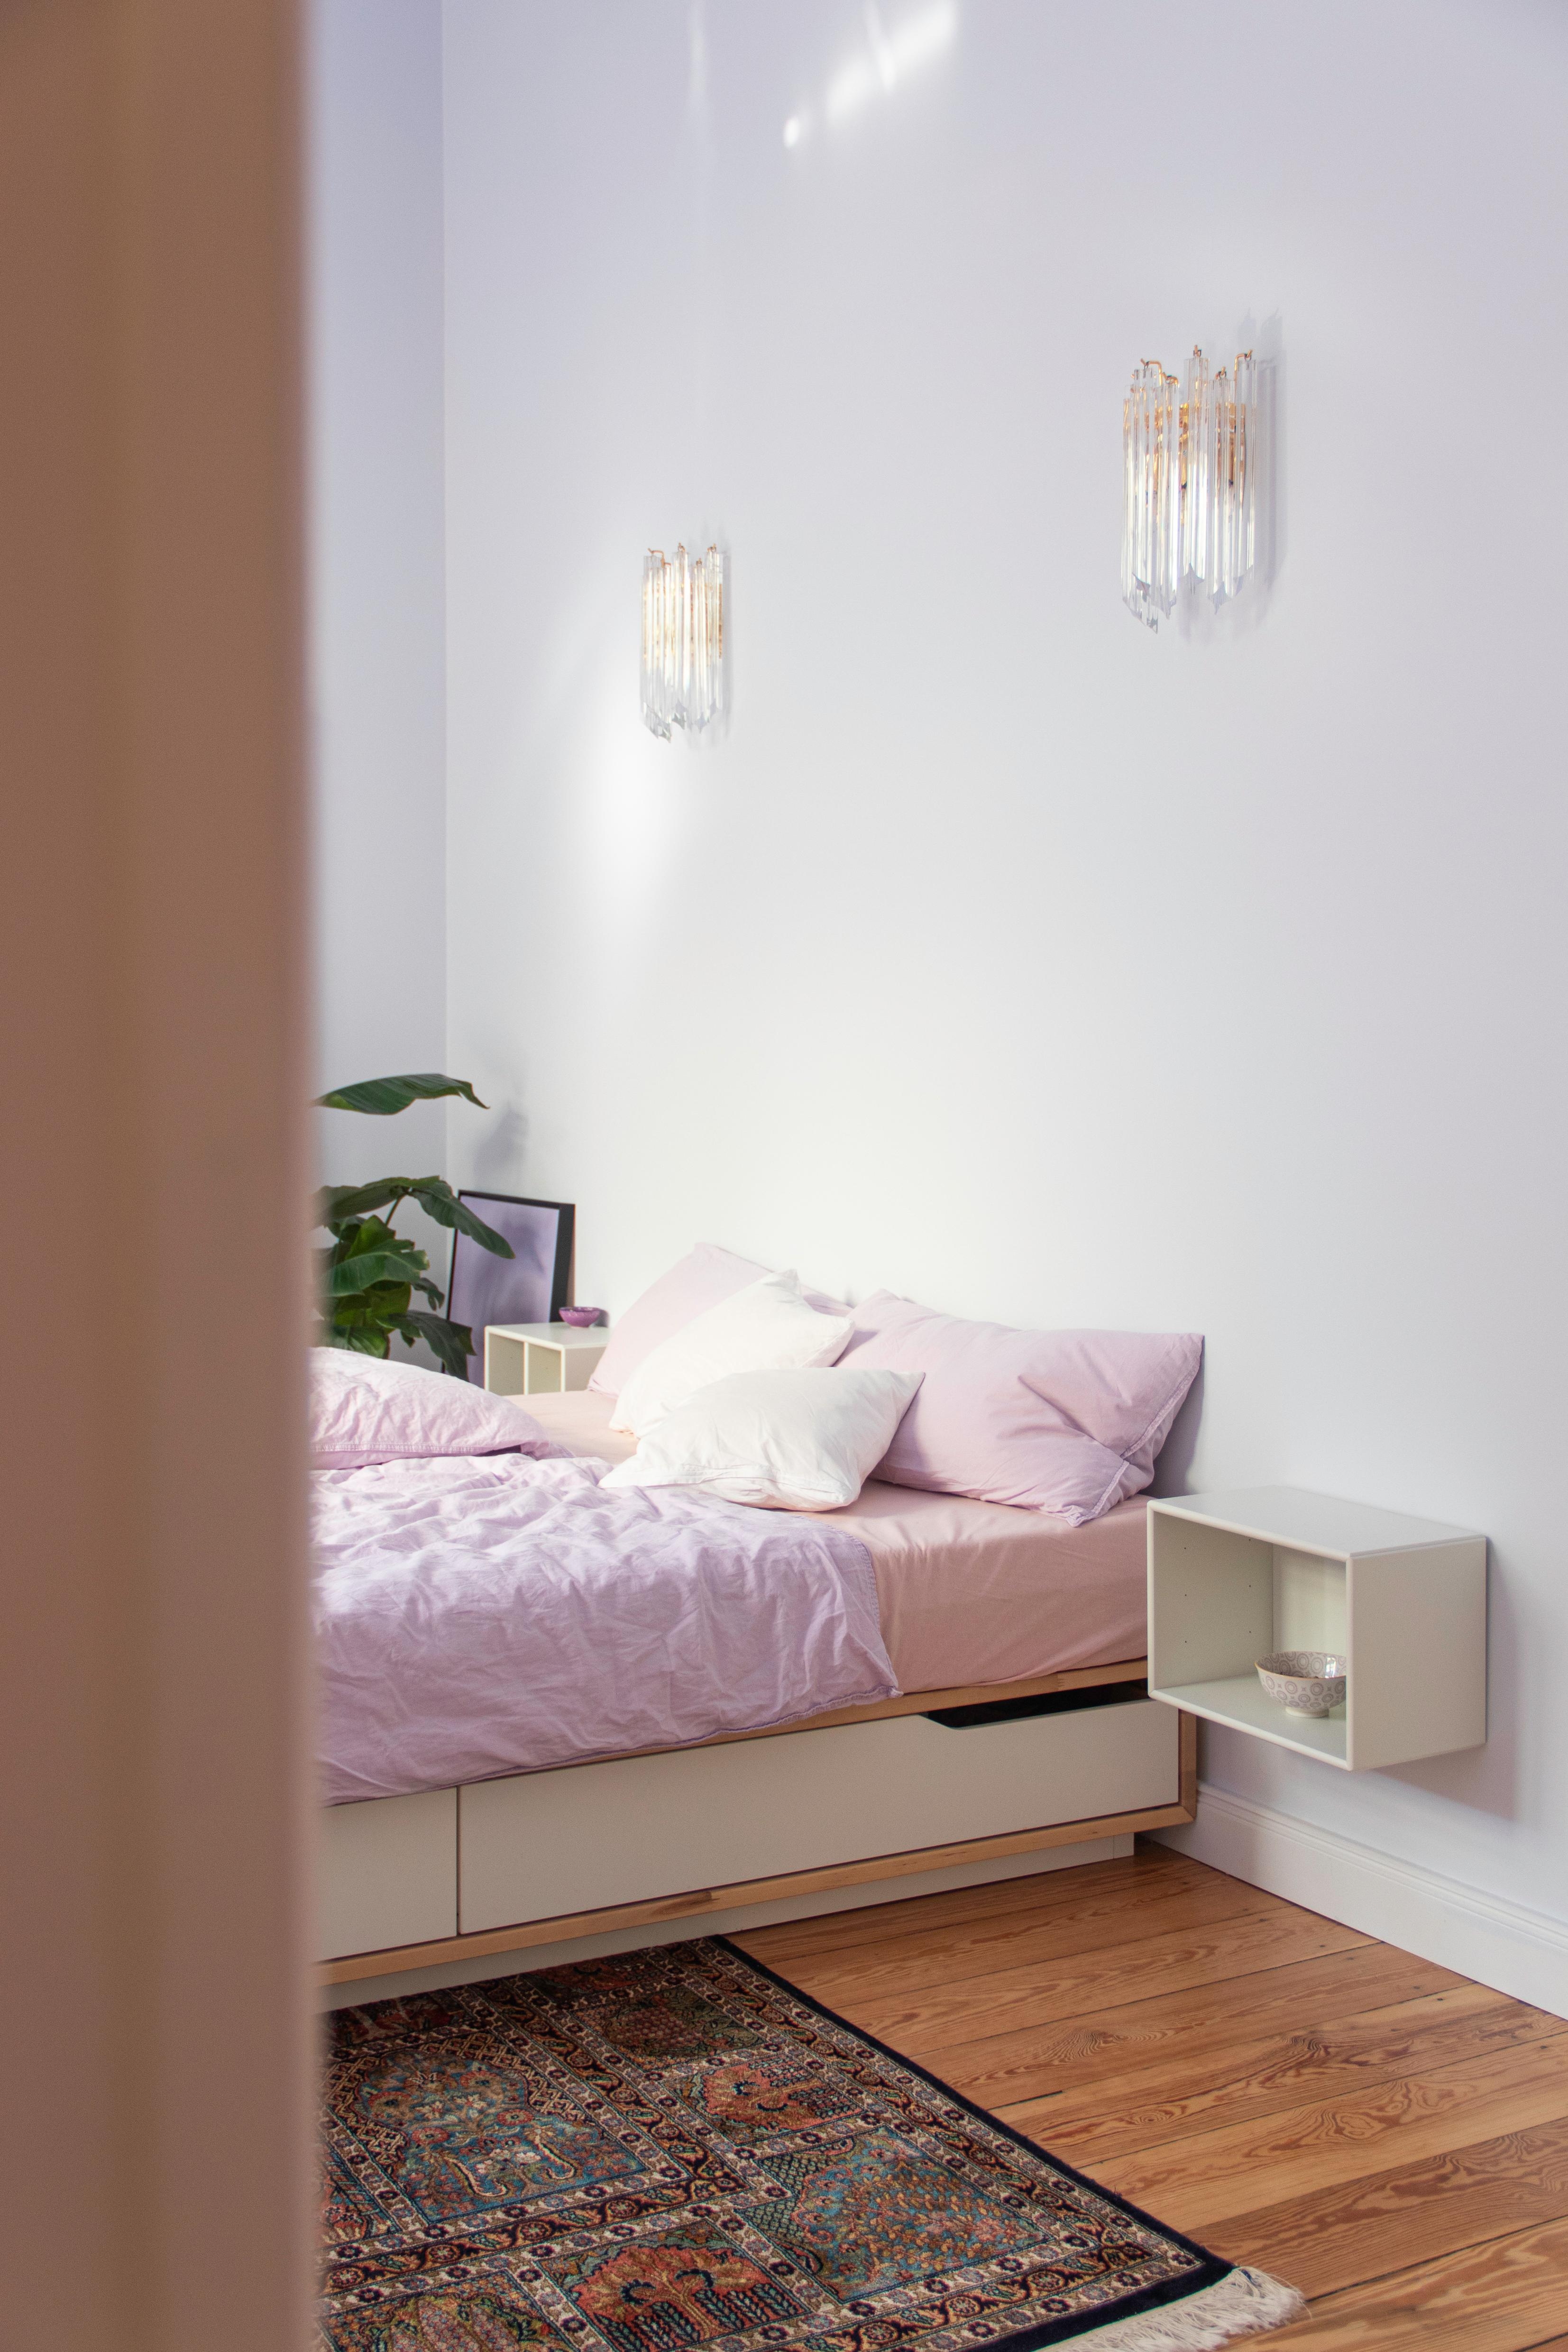 #Schlafzimmer #Pastell #Frühling #Couchliebt #Couchstyle #Hellblau #Bett #Nachttisch #Wandleuchte #Flieder